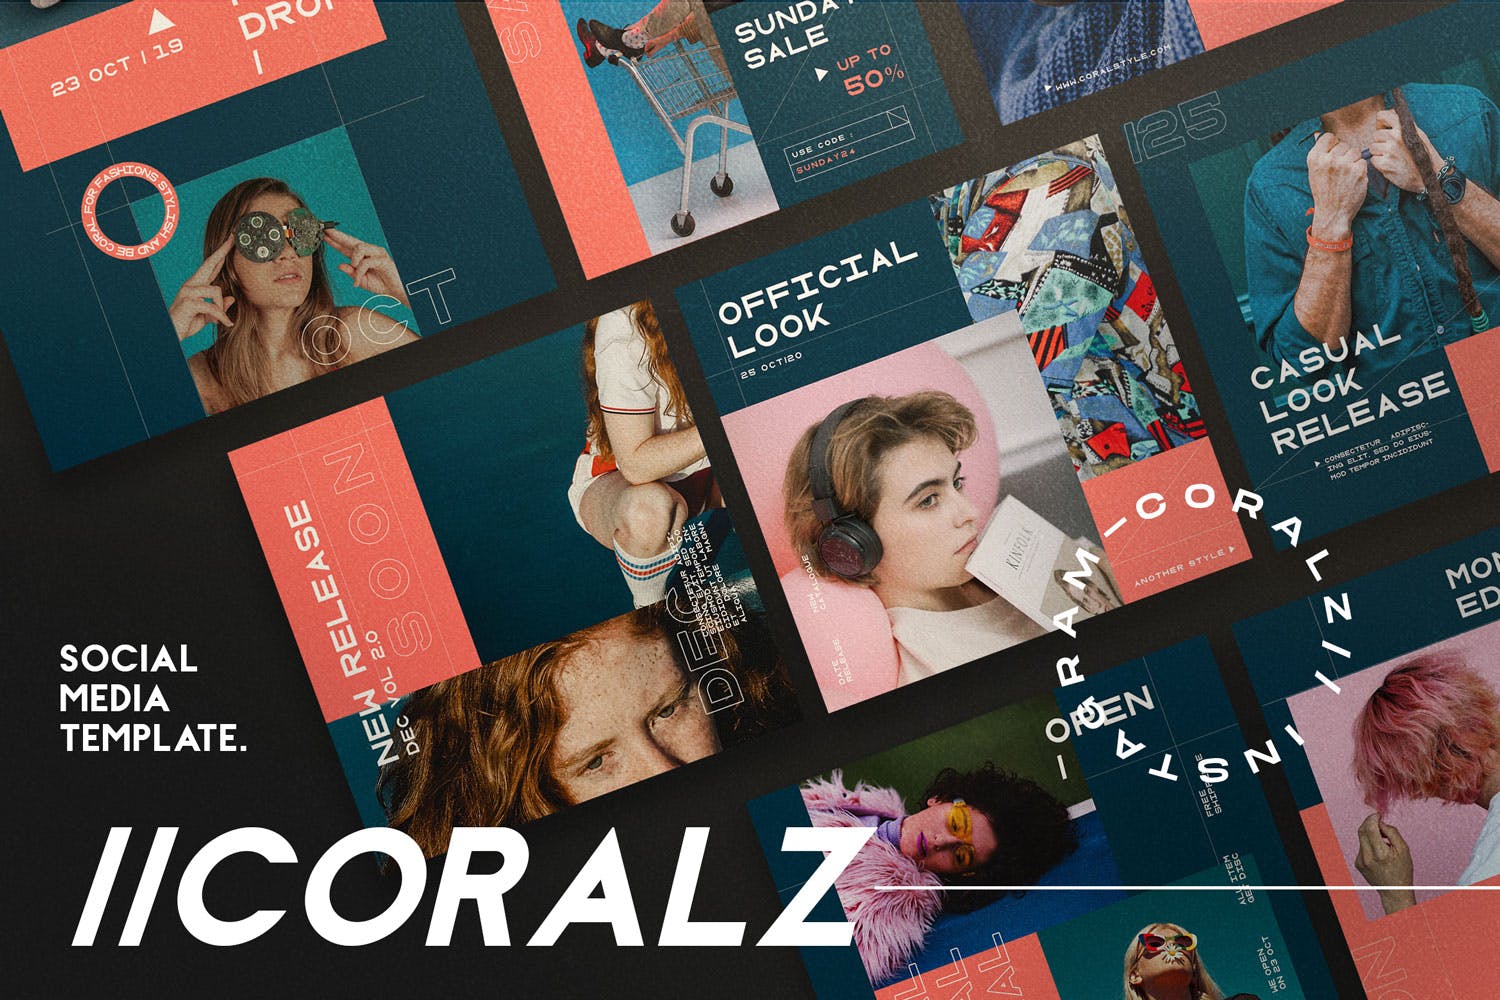 社交媒体品牌故事推广设计素材 CORALZ – Social Media Template + Stories插图(4)